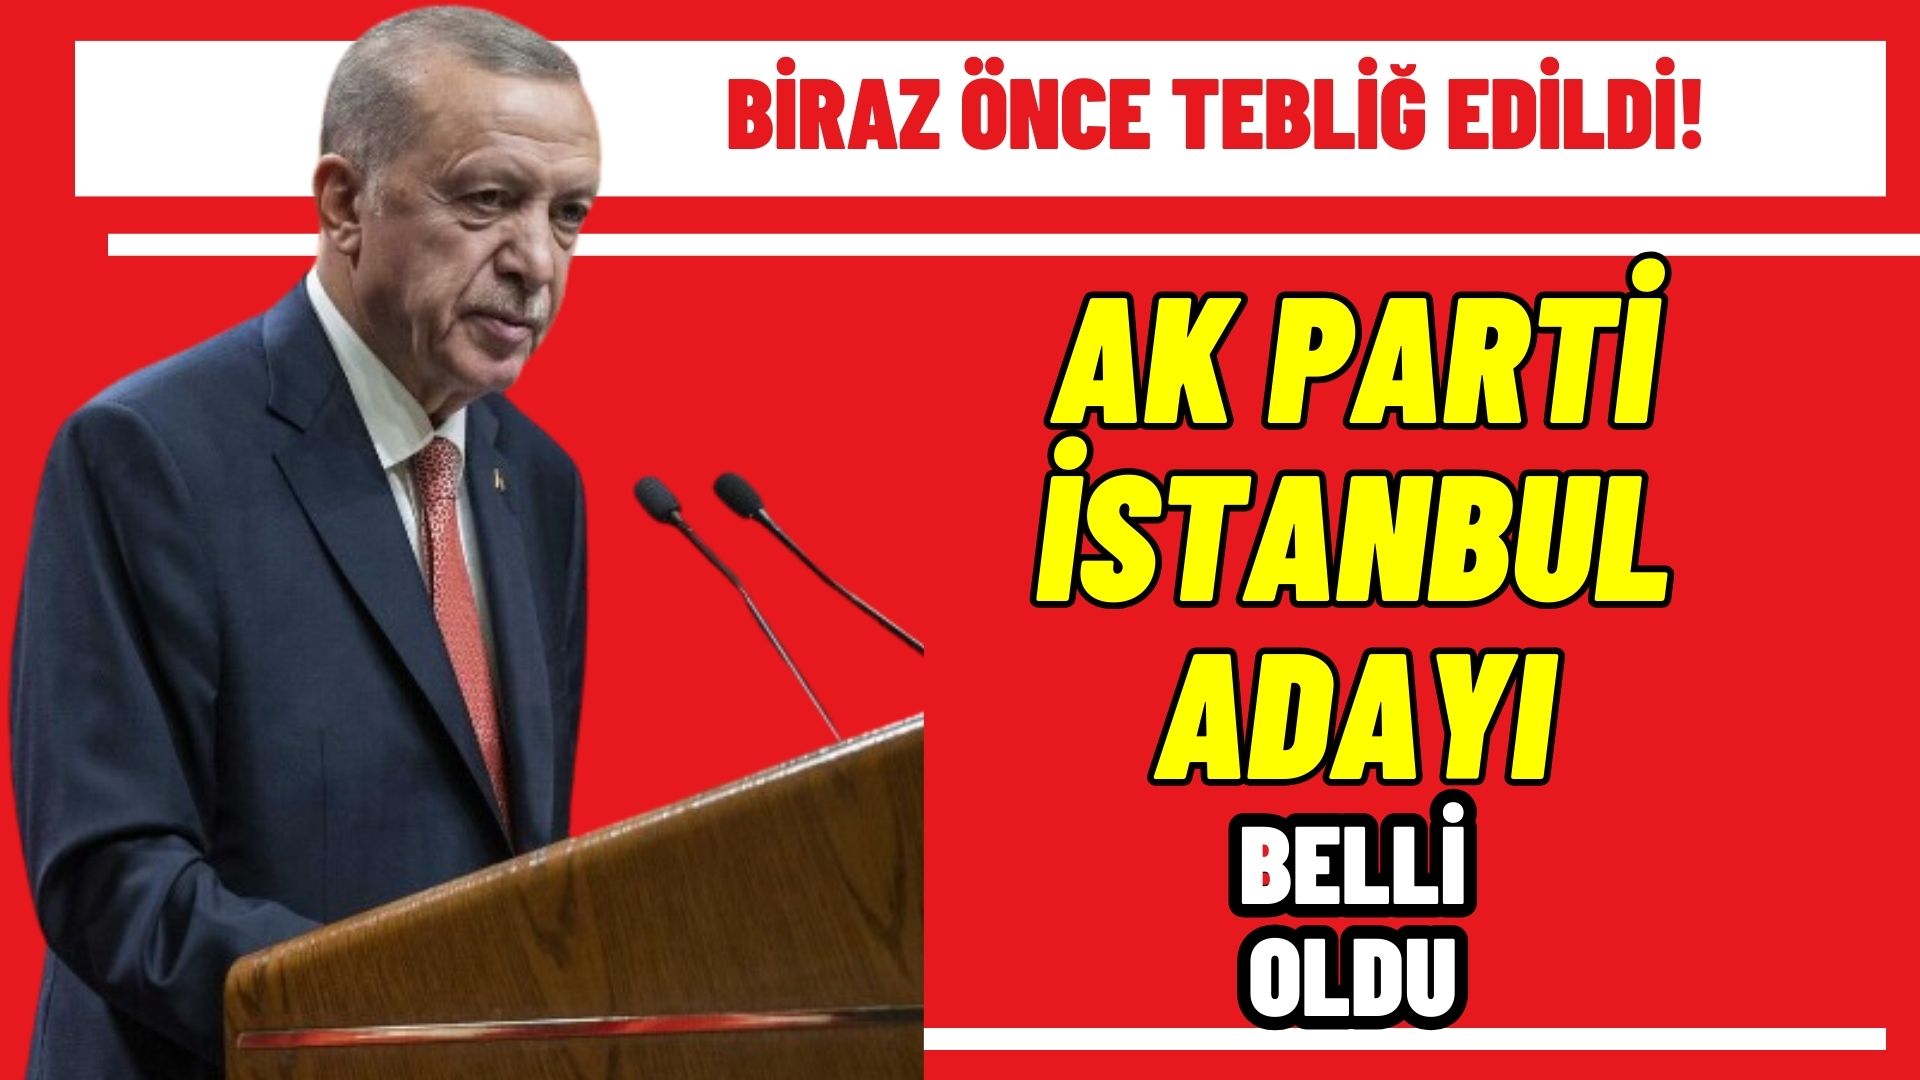 Biraz önce tebliğ edildi! Ak Parti İstanbul Büyükşehir Belediye başkan adayı belli oldu!